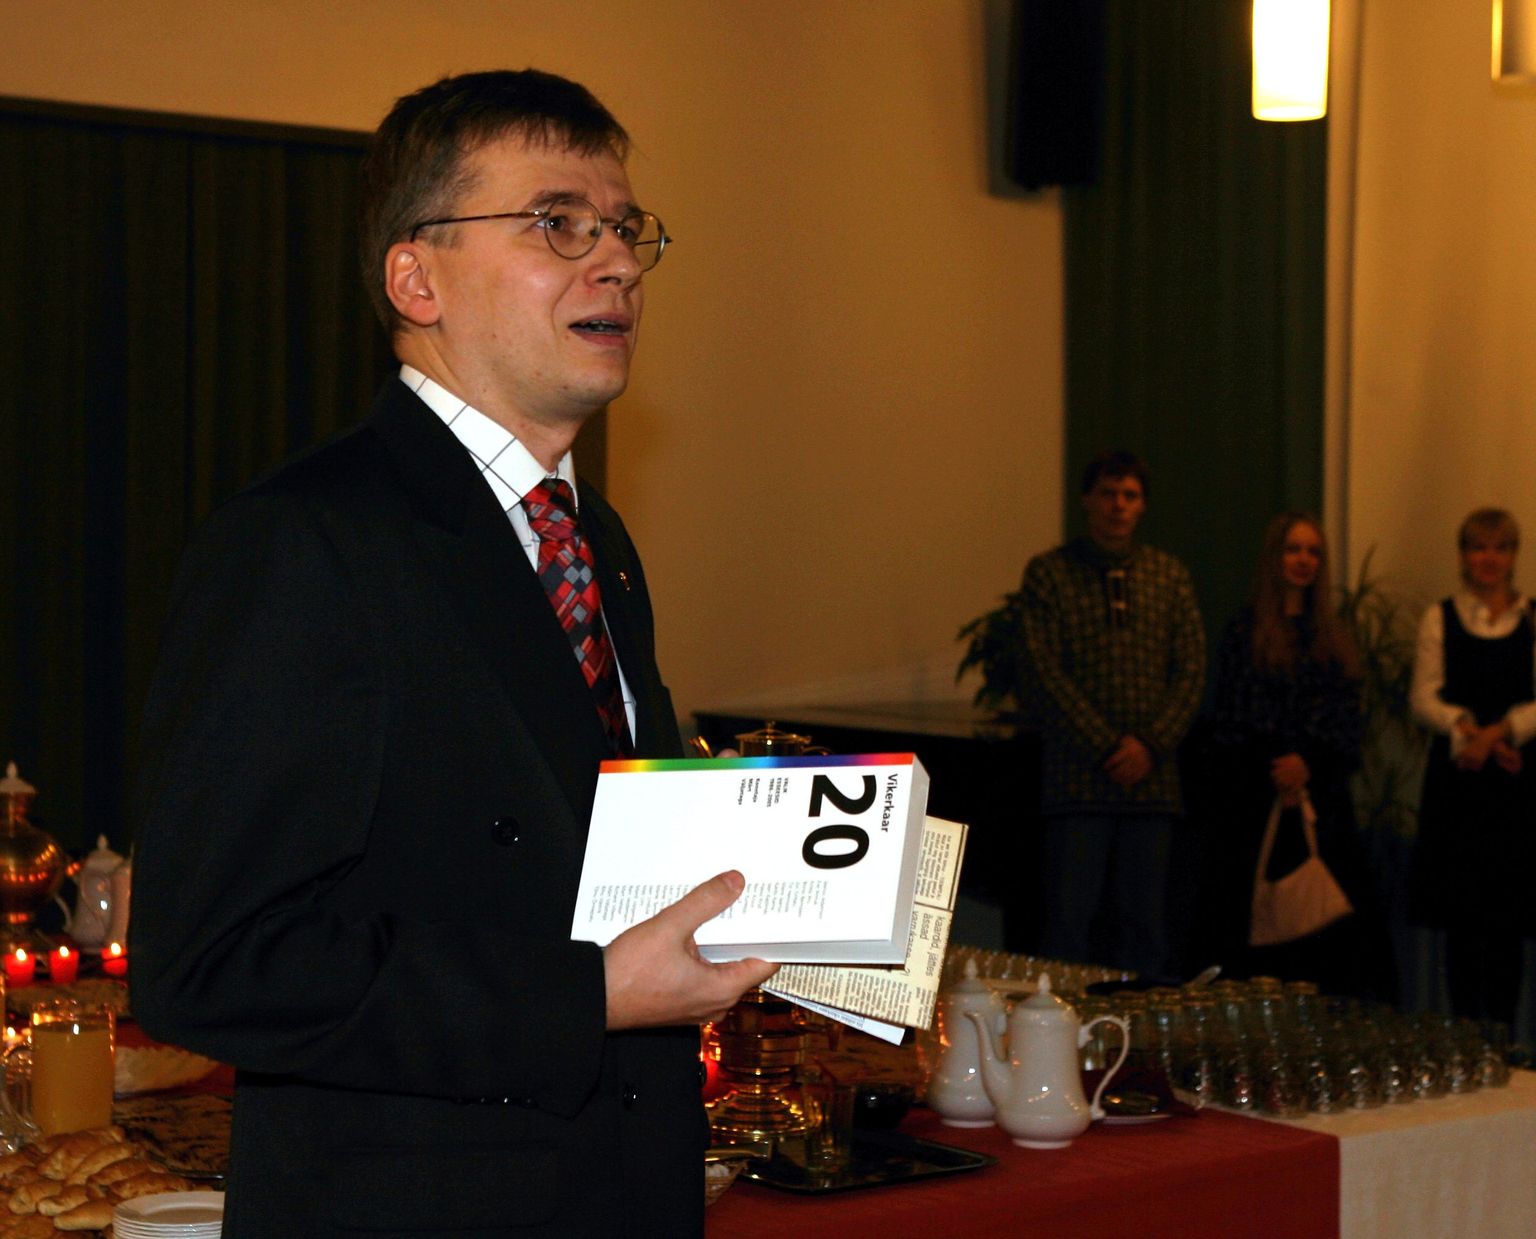 Kirjanike liidus toimunud ajakirja Vikerkaar 20. sünnipäev detsembris 2006. Pildil ajakirja peatoimetaja Märt Väljataga.